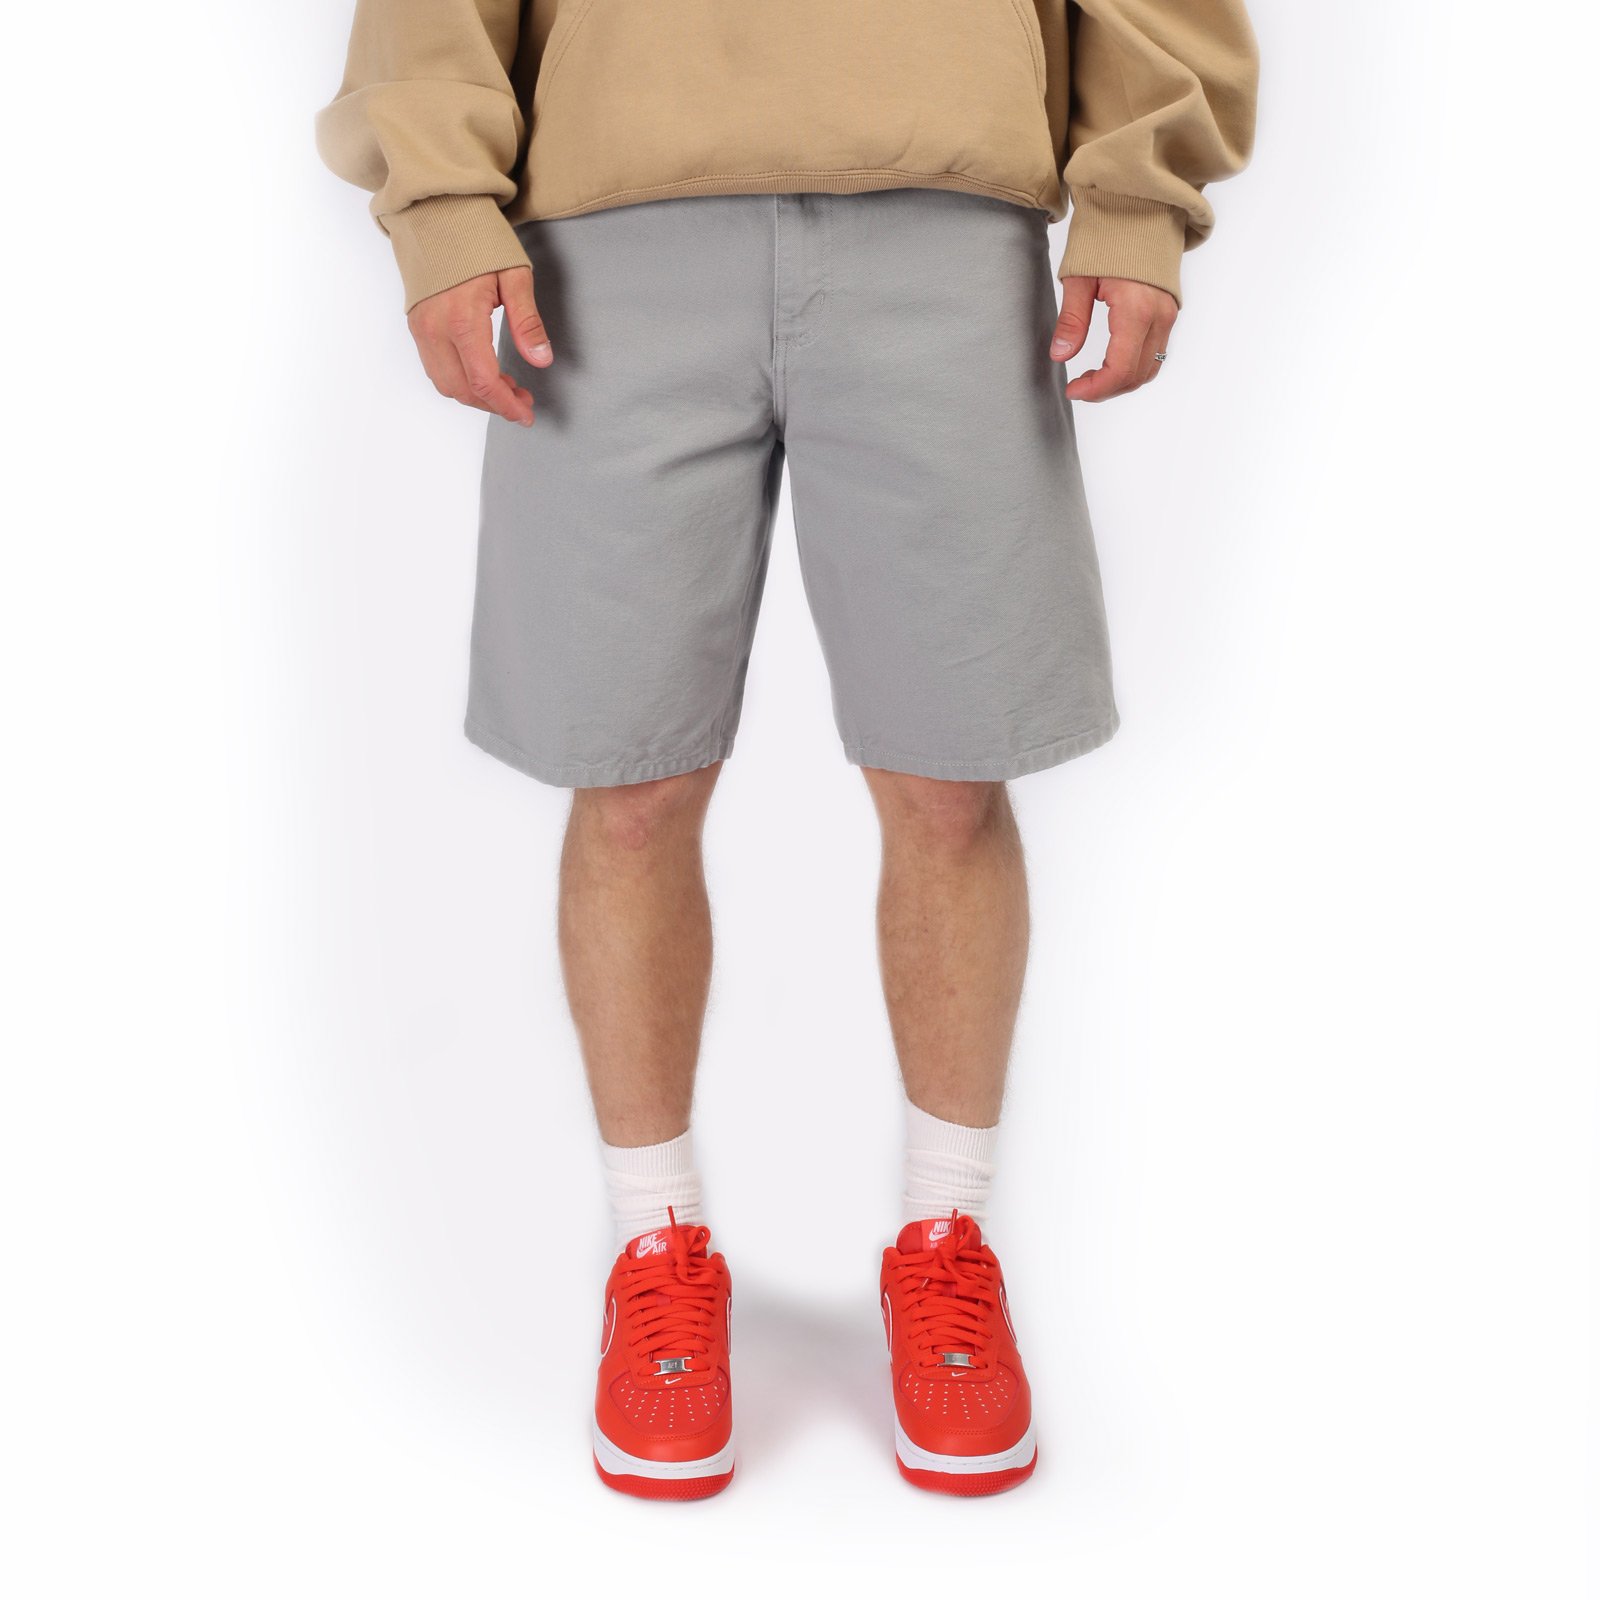 мужские серые шорты Carhartt WIP Single Knee Short I027942-marengo - цена, описание, фото 1